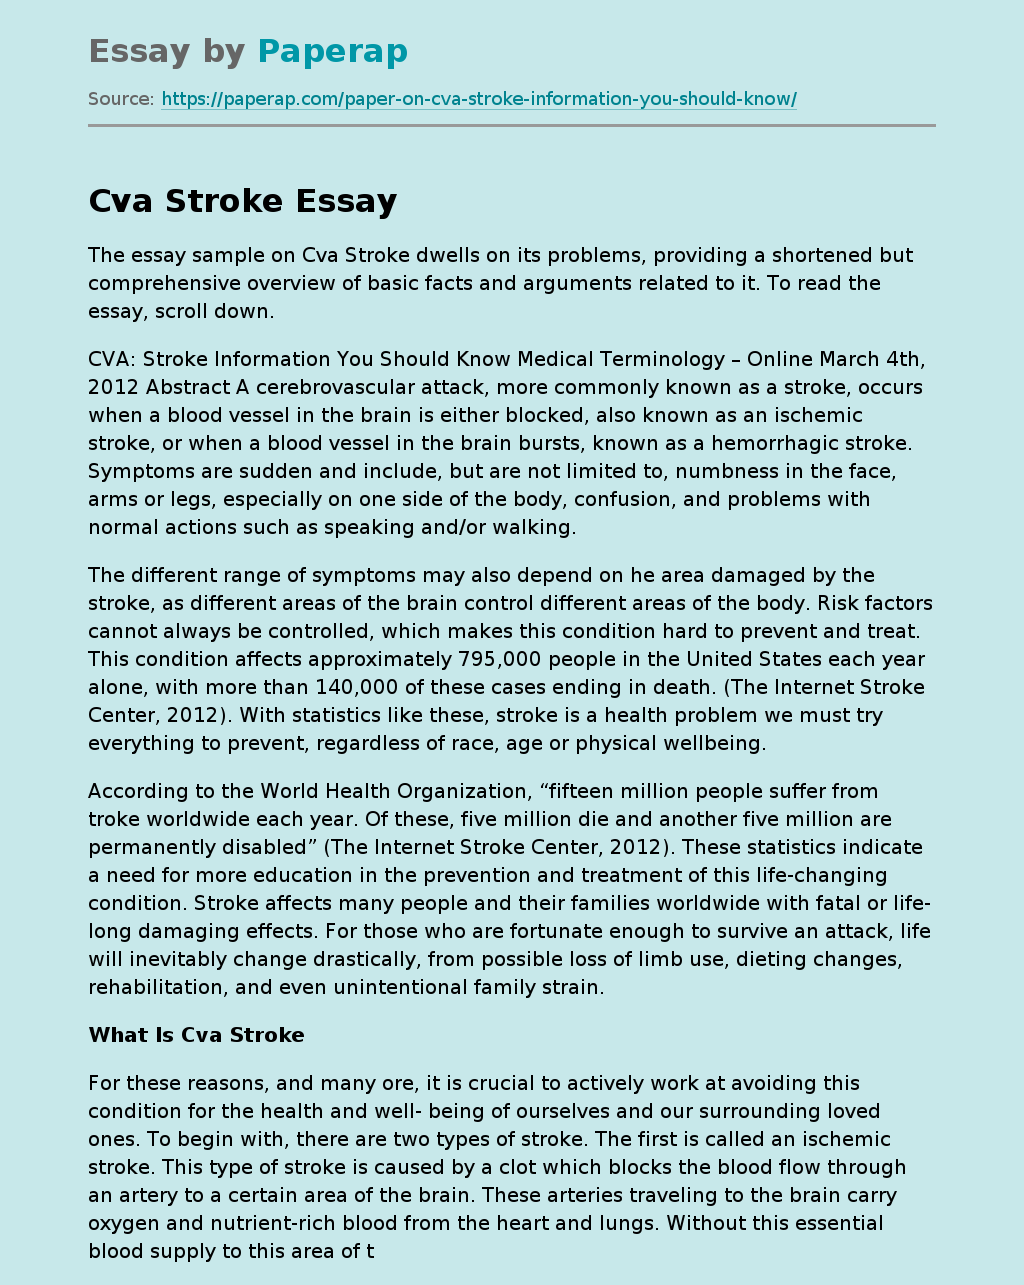 What Is Cva Stroke?